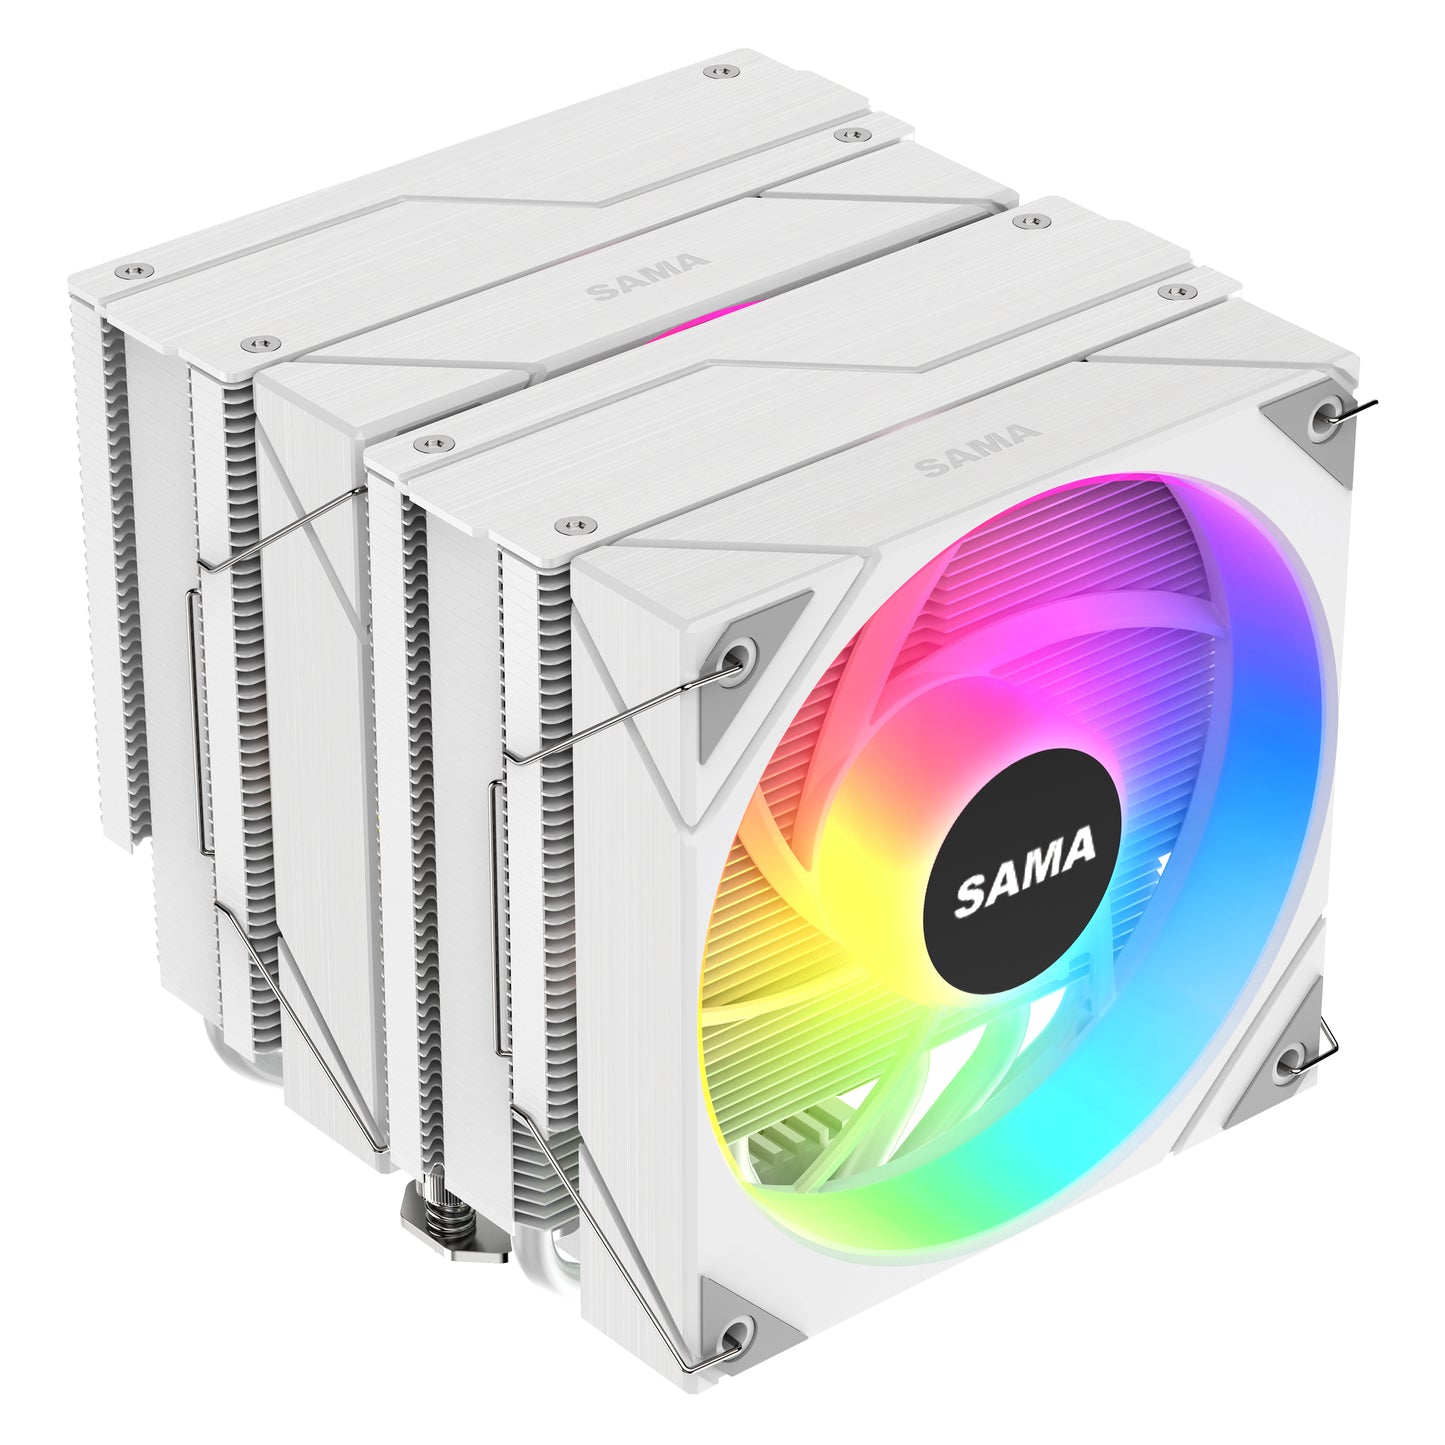 SAMA 6PD CPU AIR Cooler